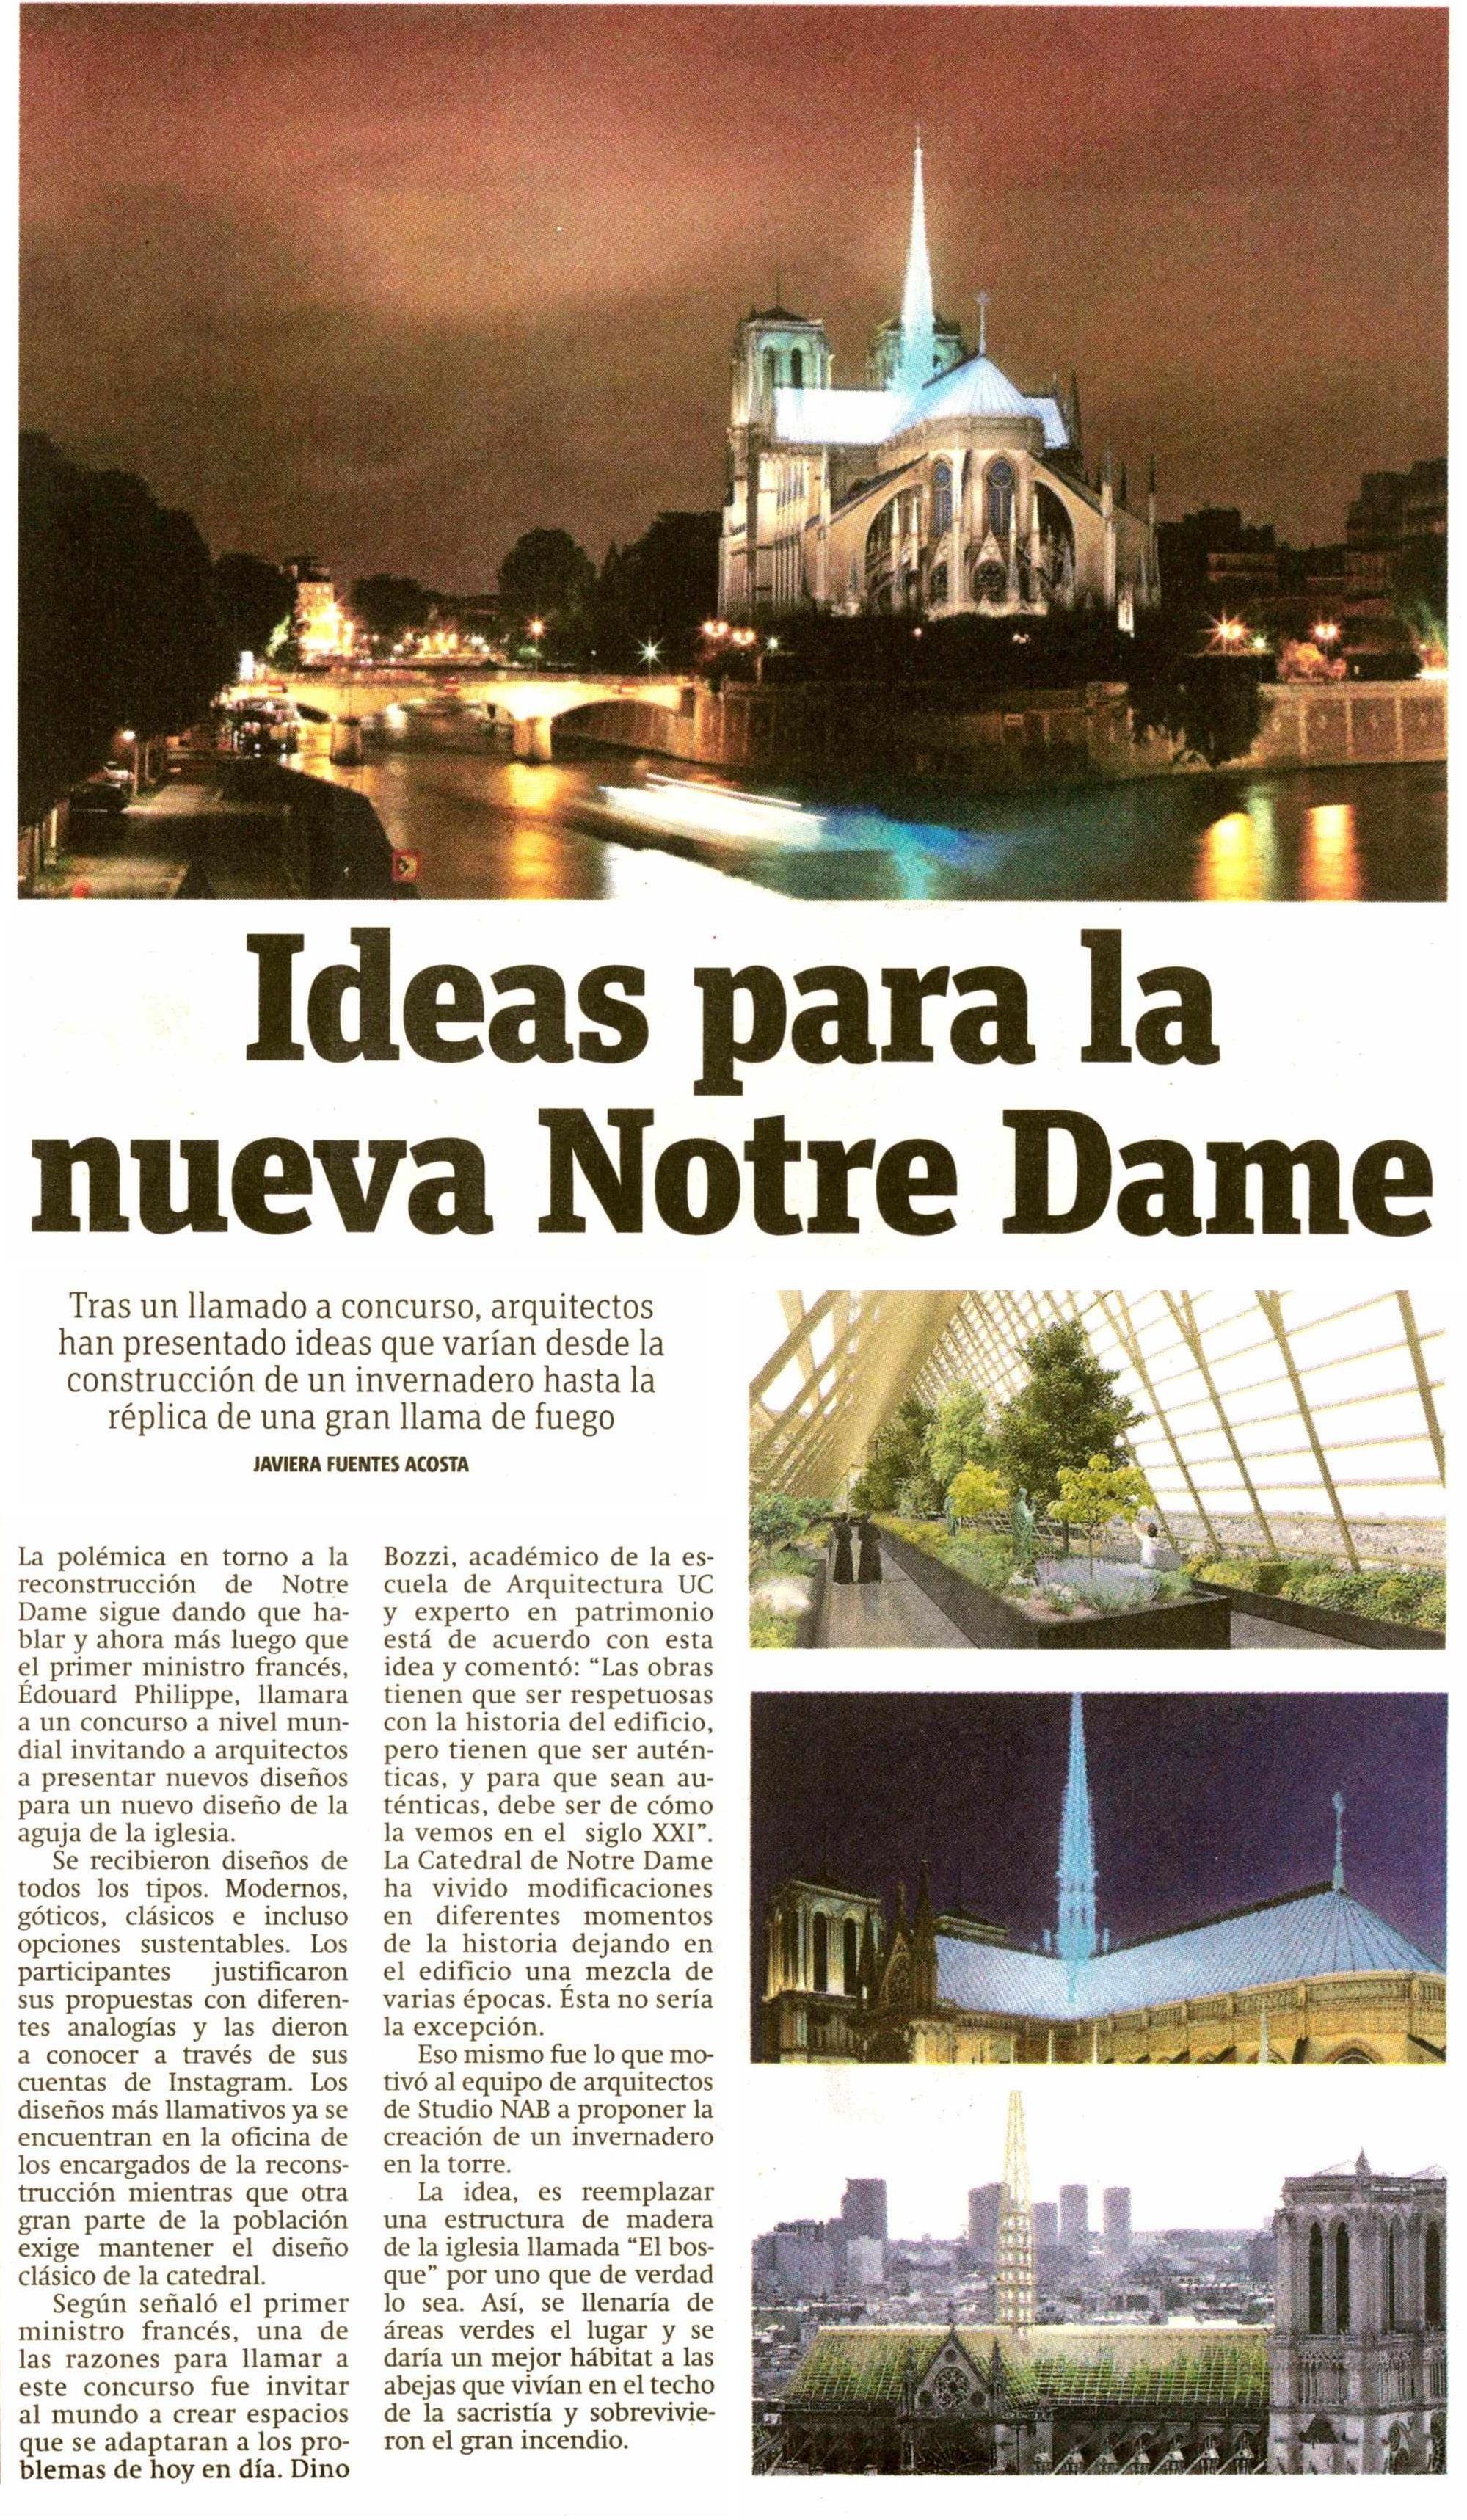 19-04-30_Dino_Bozzi_sobre_concurso_para_reconstruir_la_catedral_de_Notre_Dame.jpeg